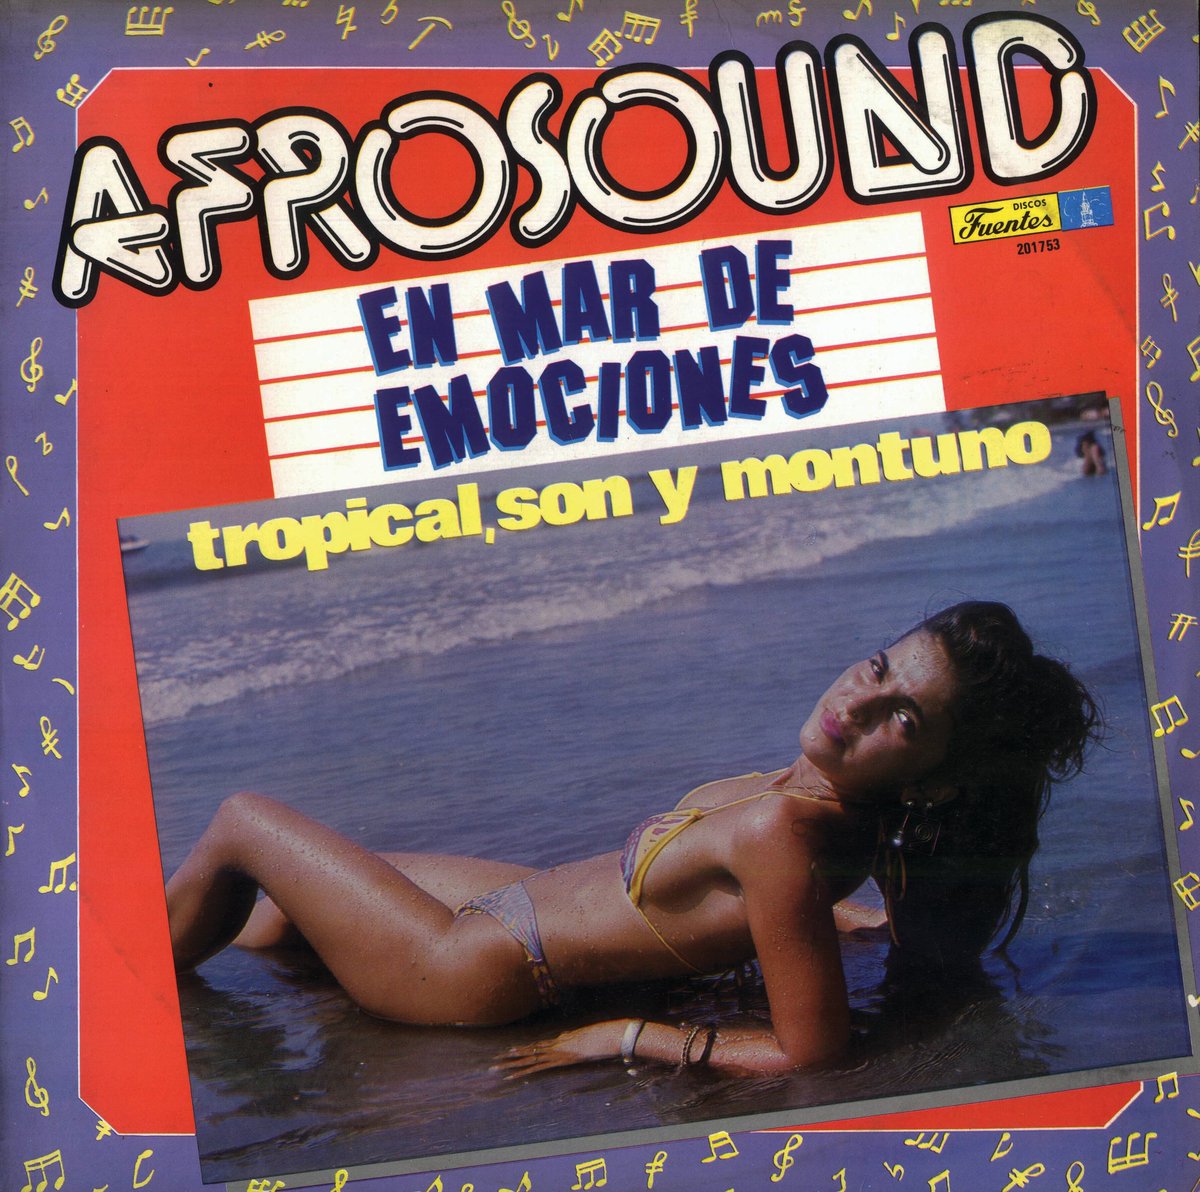 Hoy en nuestro tradicional TBT, queremos hablar de esta joya de la música 🎶 😍

'En Mar de Emociones' un álbum de 1991, de nuestra orquesta Afrosound 😍 que nos dejó uno de los hits más importantes de la música tropical.

¿Cuál? Aquí les contamos 👇🏼